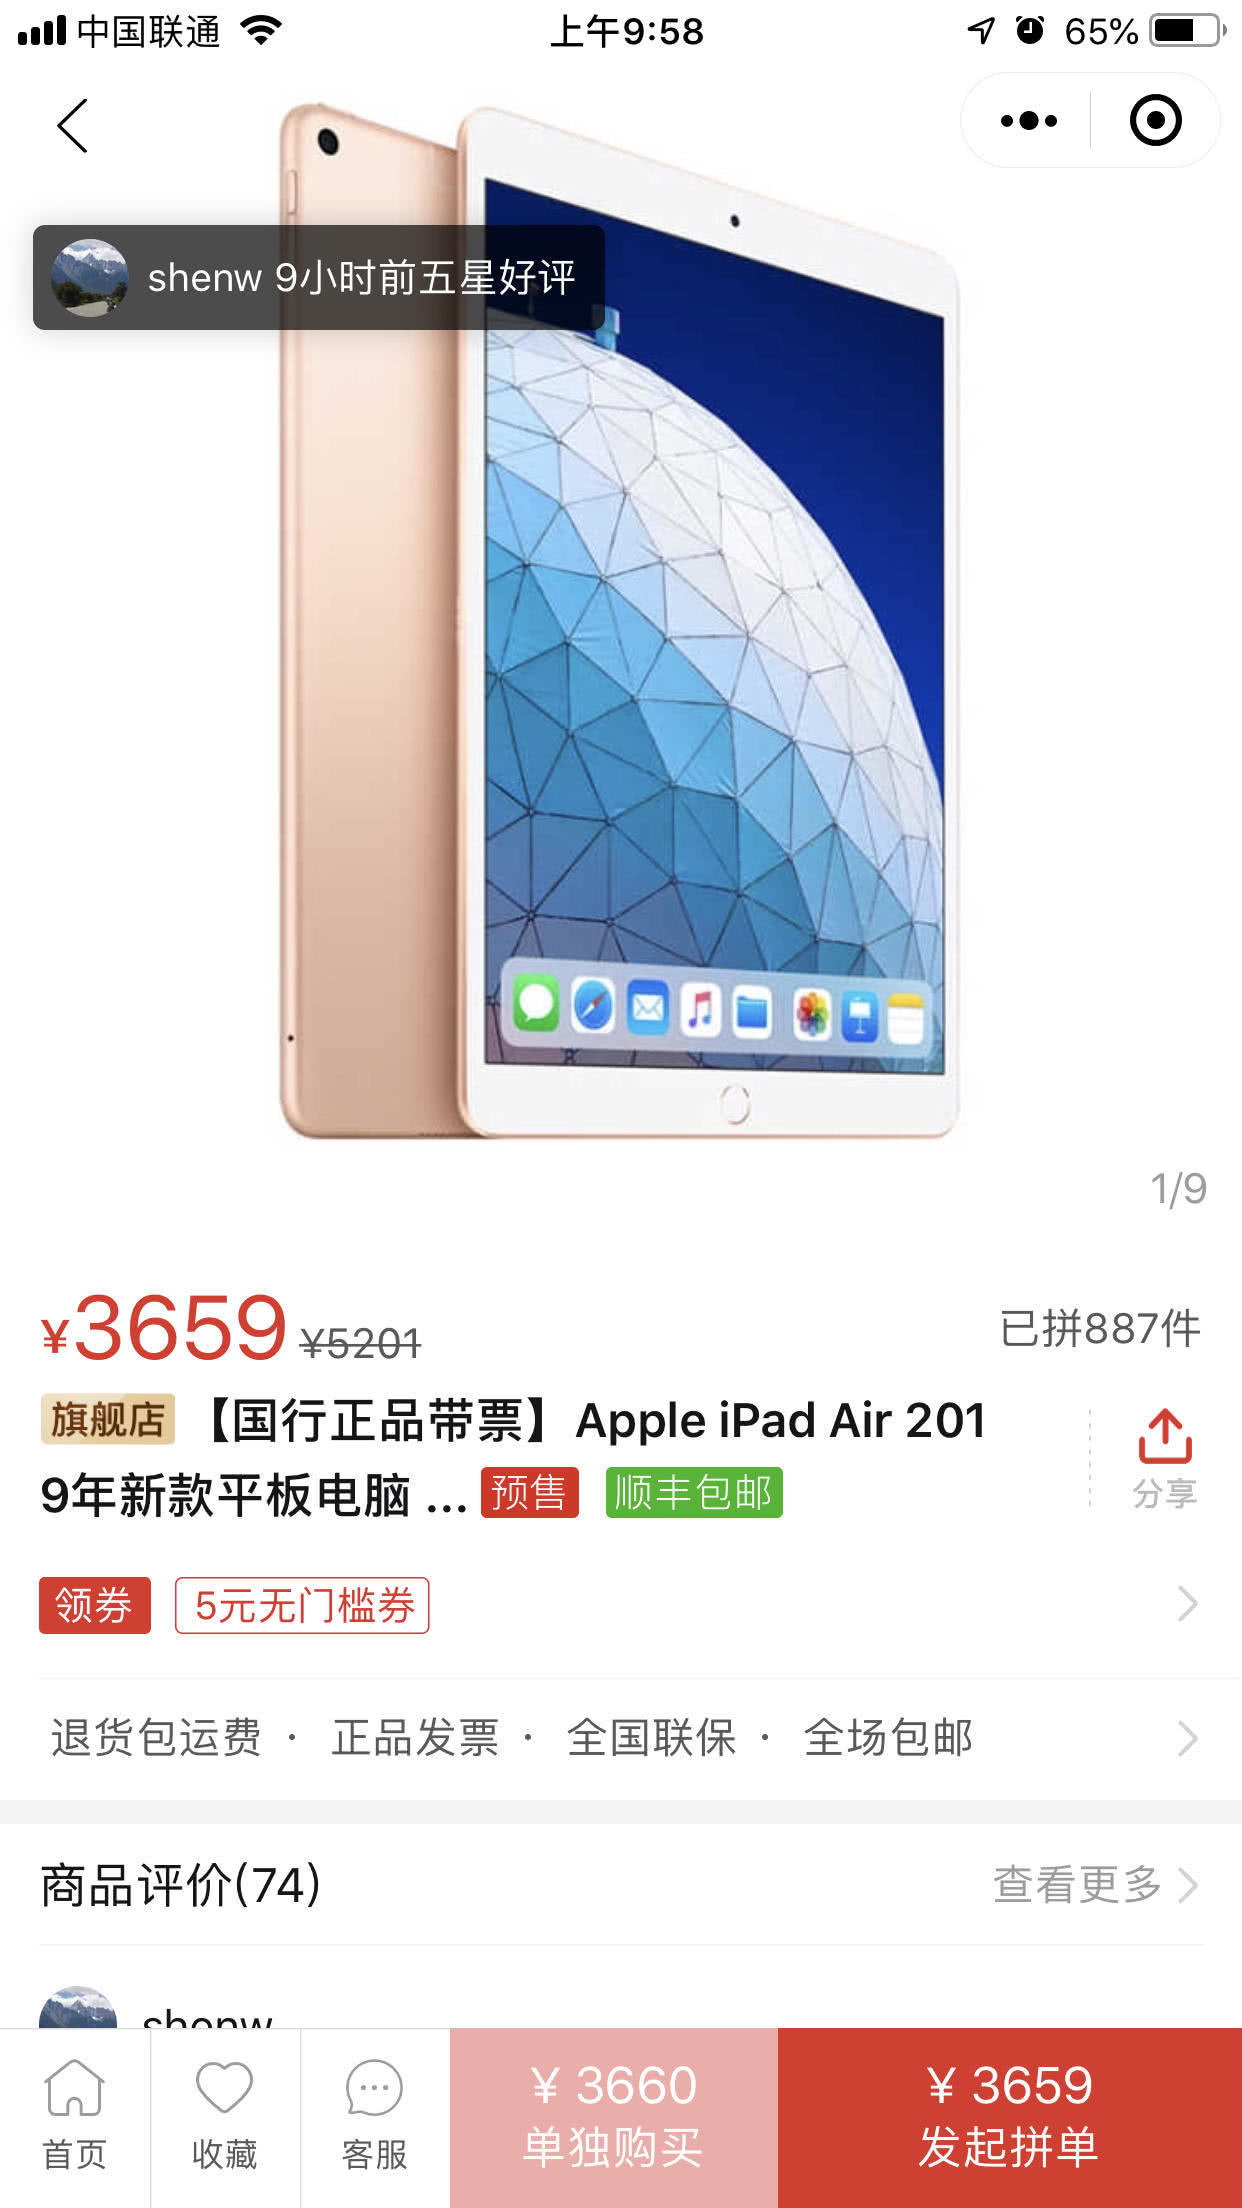 新iPad mini再减价：2558元 最值的A12机器设备？